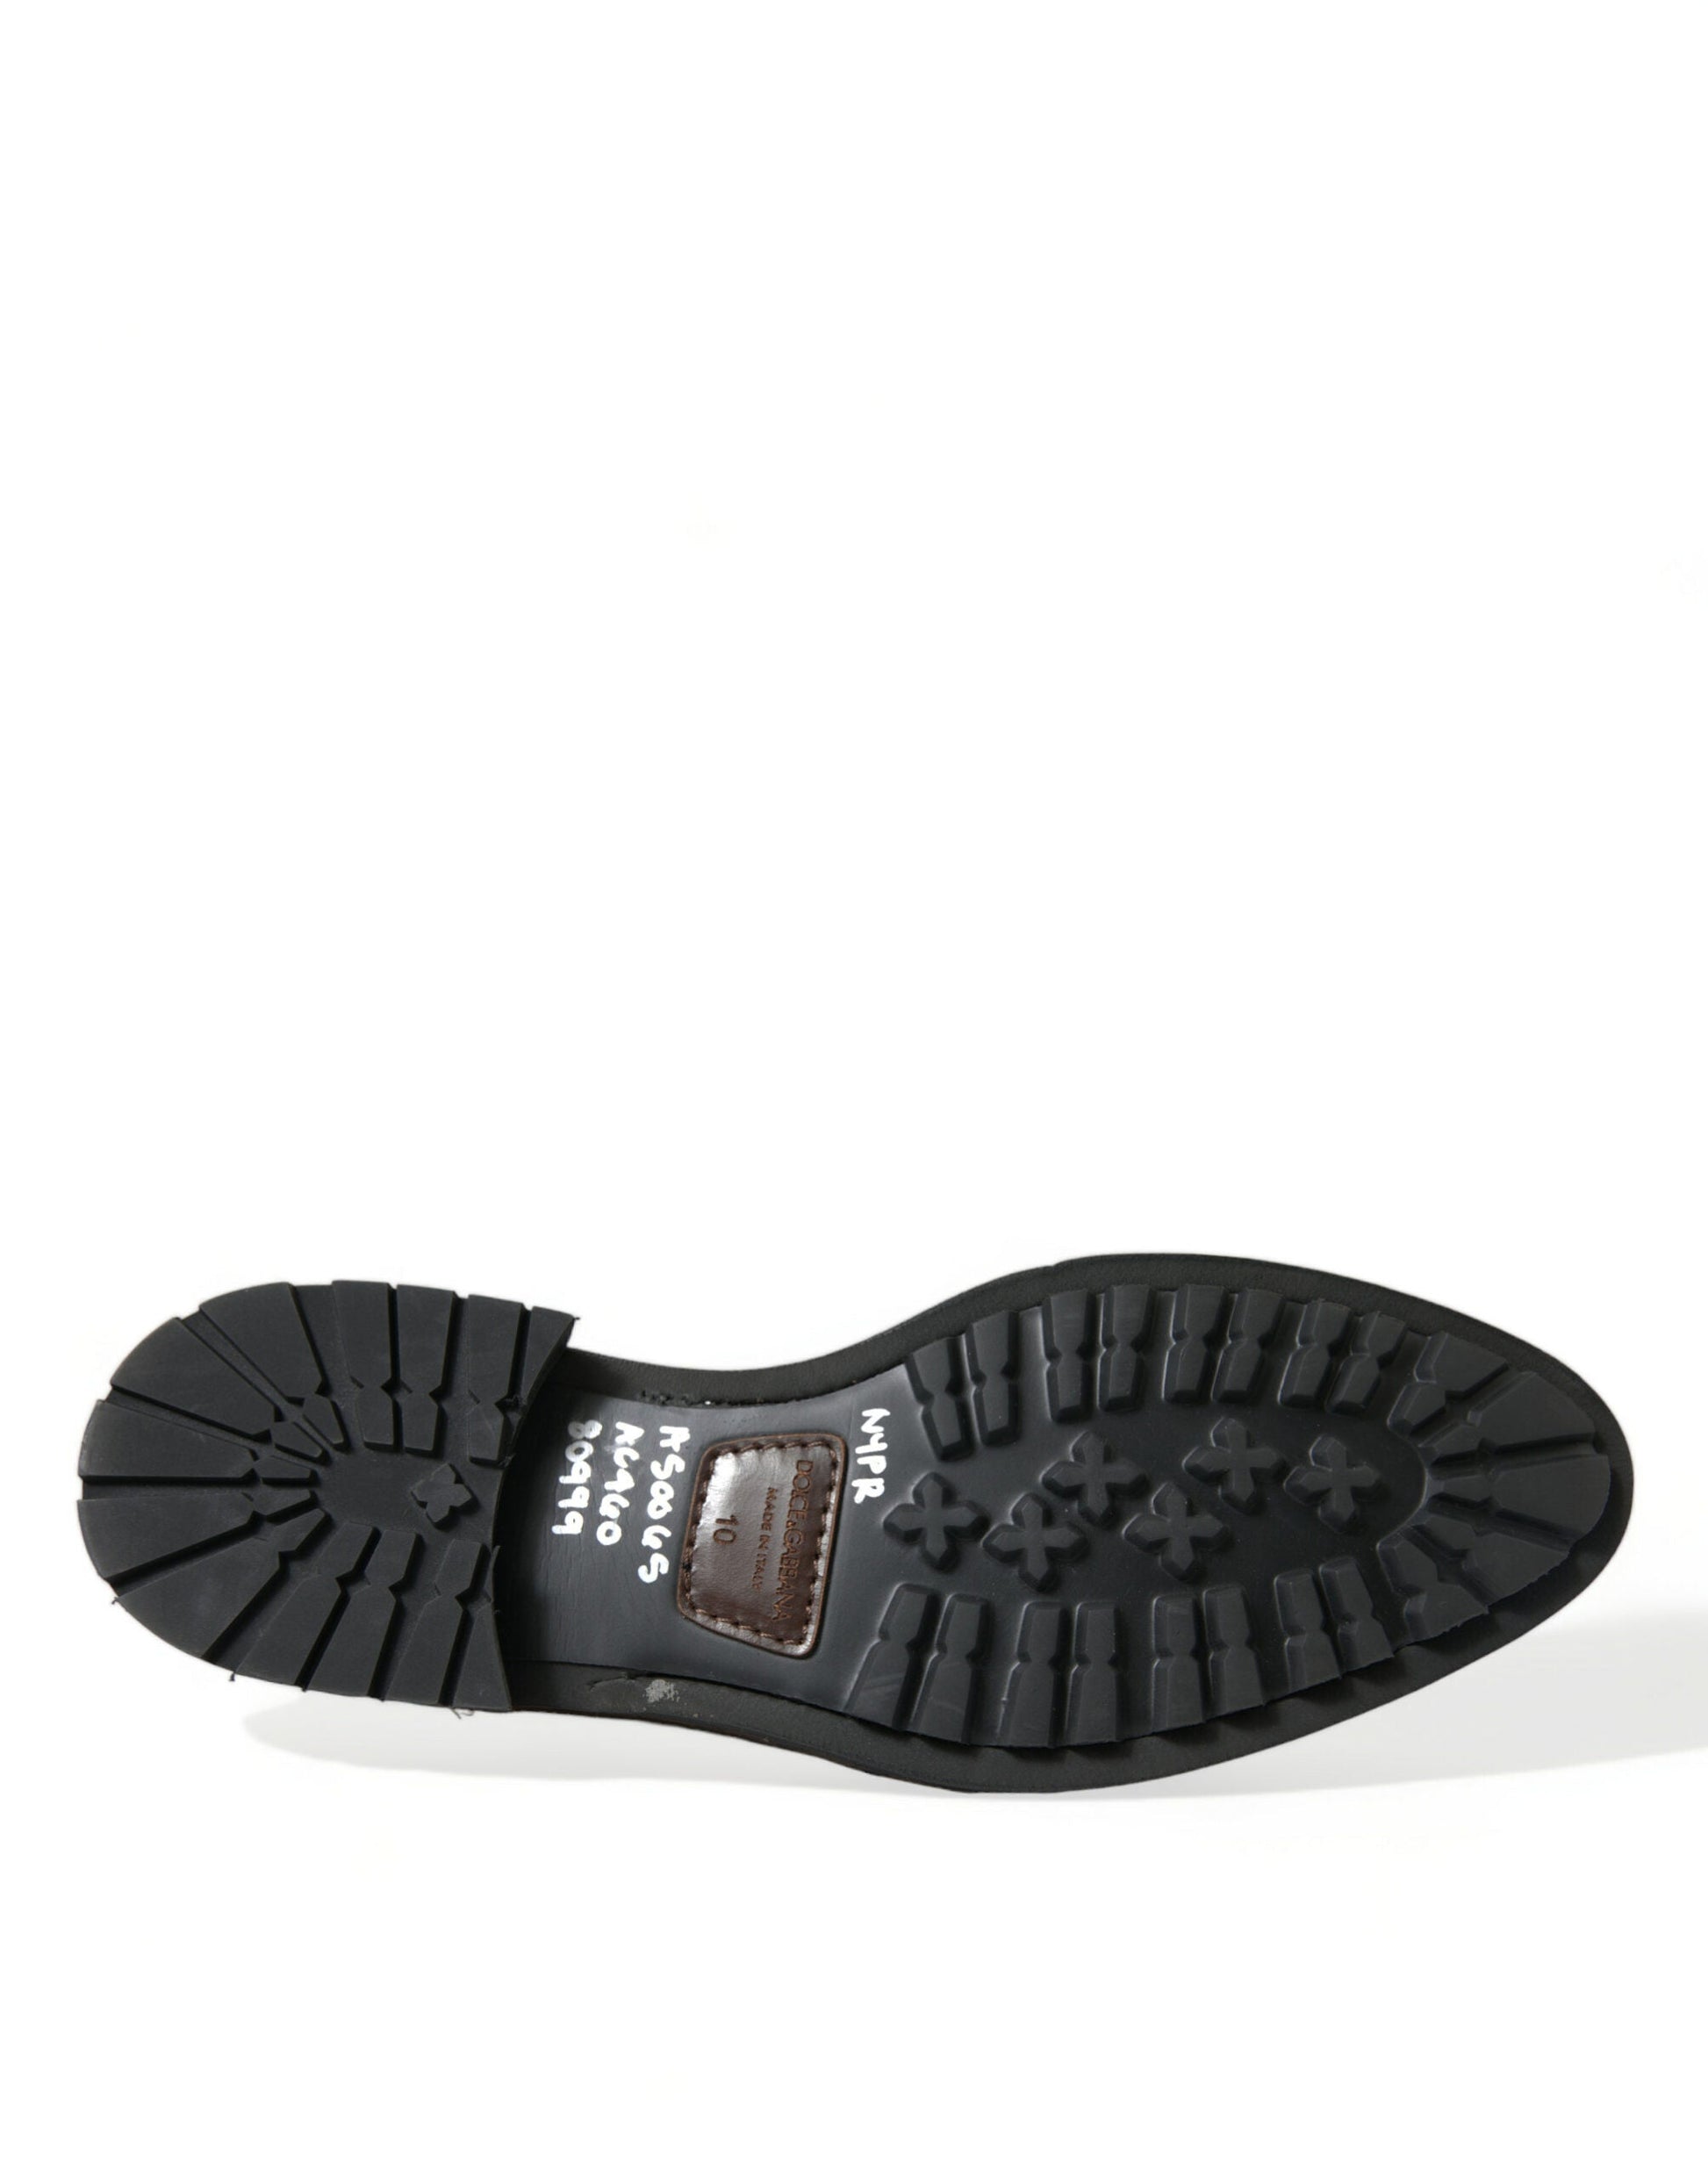 Fashionsarah.com Fashionsarah.com Dolce & Gabbana Black Leather Studded Loafers Dress Shoes